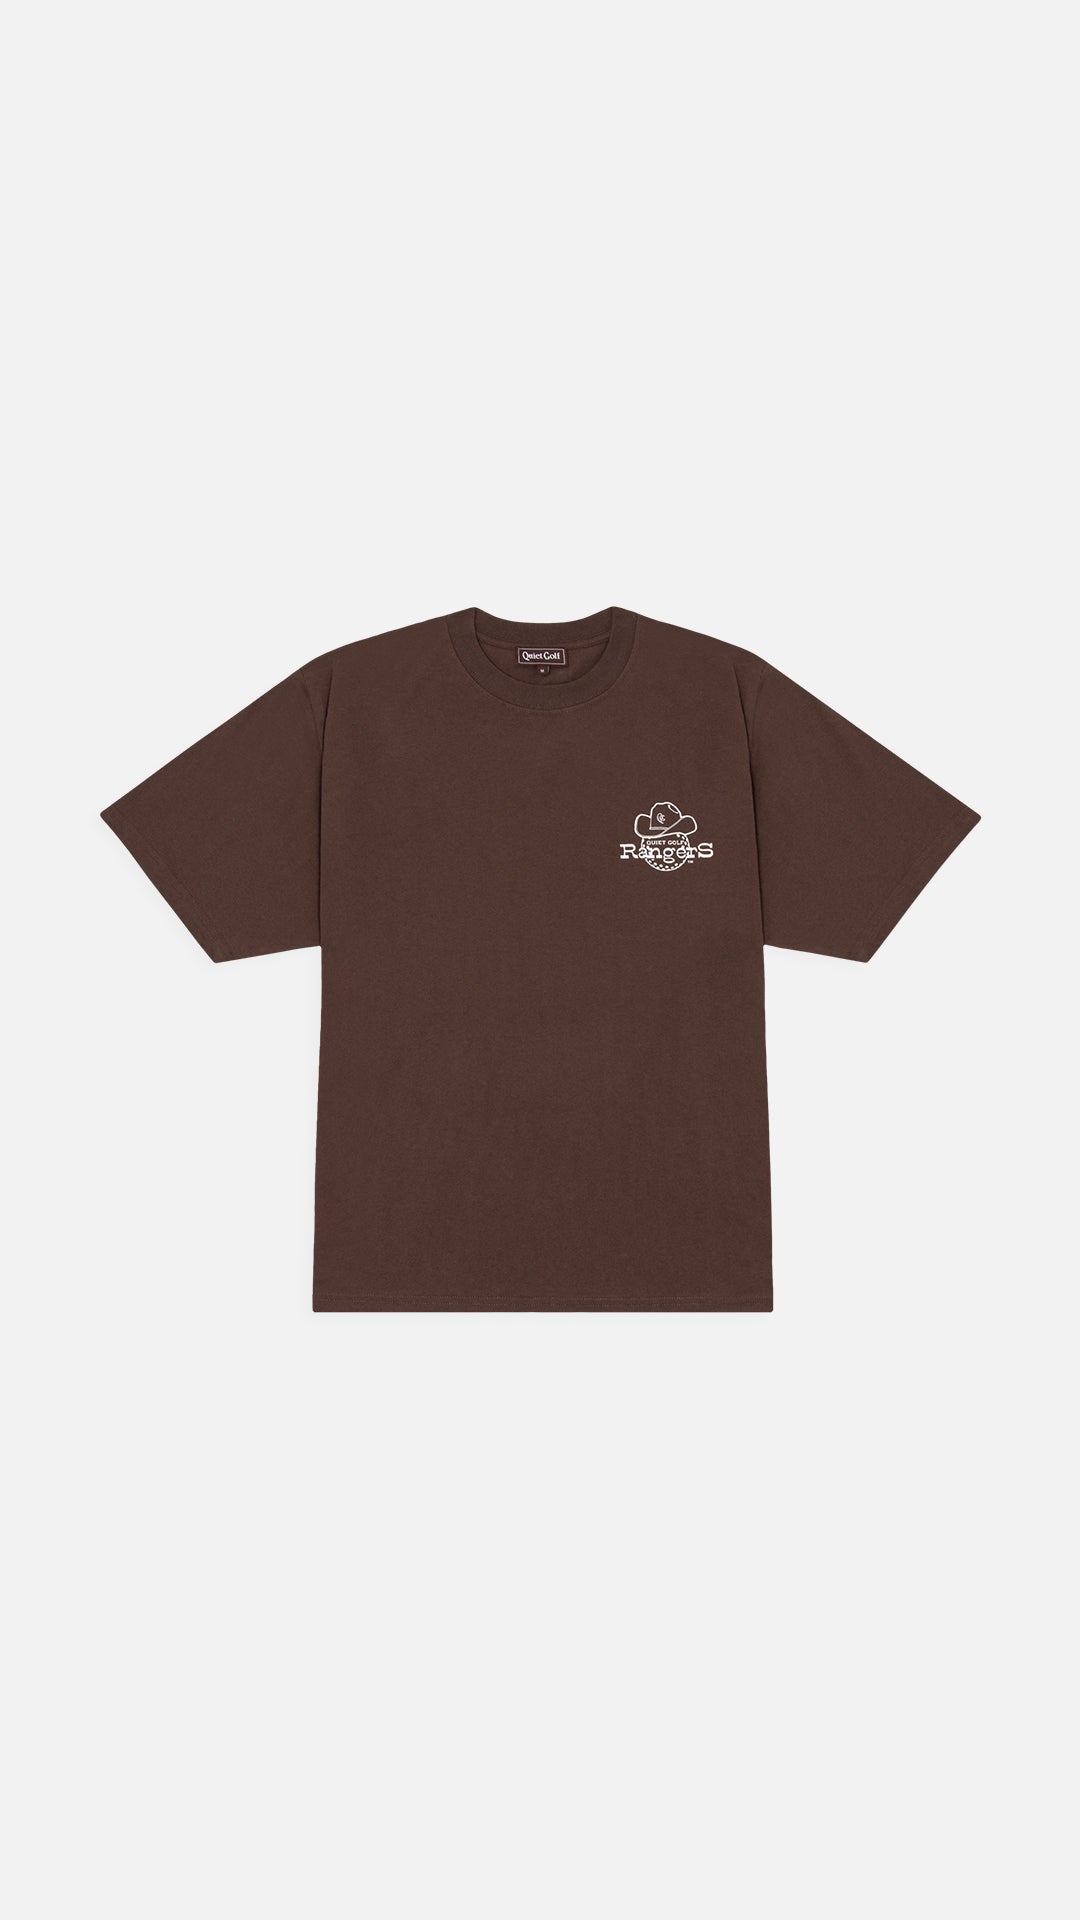 Rangers T-Shirt Brown